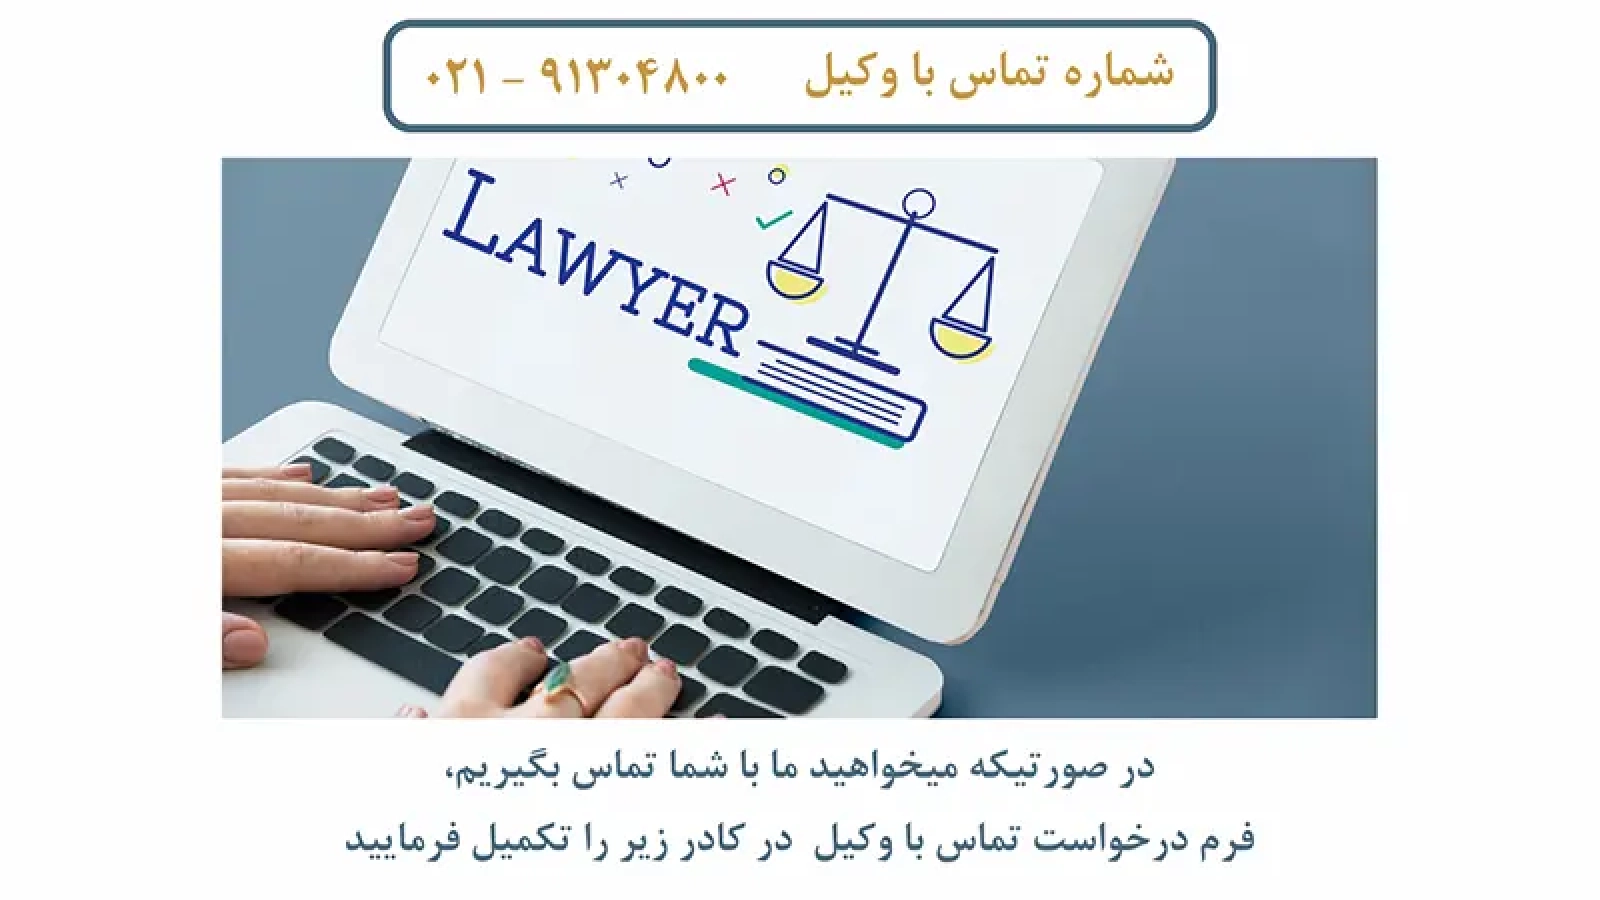 جستوجوی آنلاین سایت وکیل